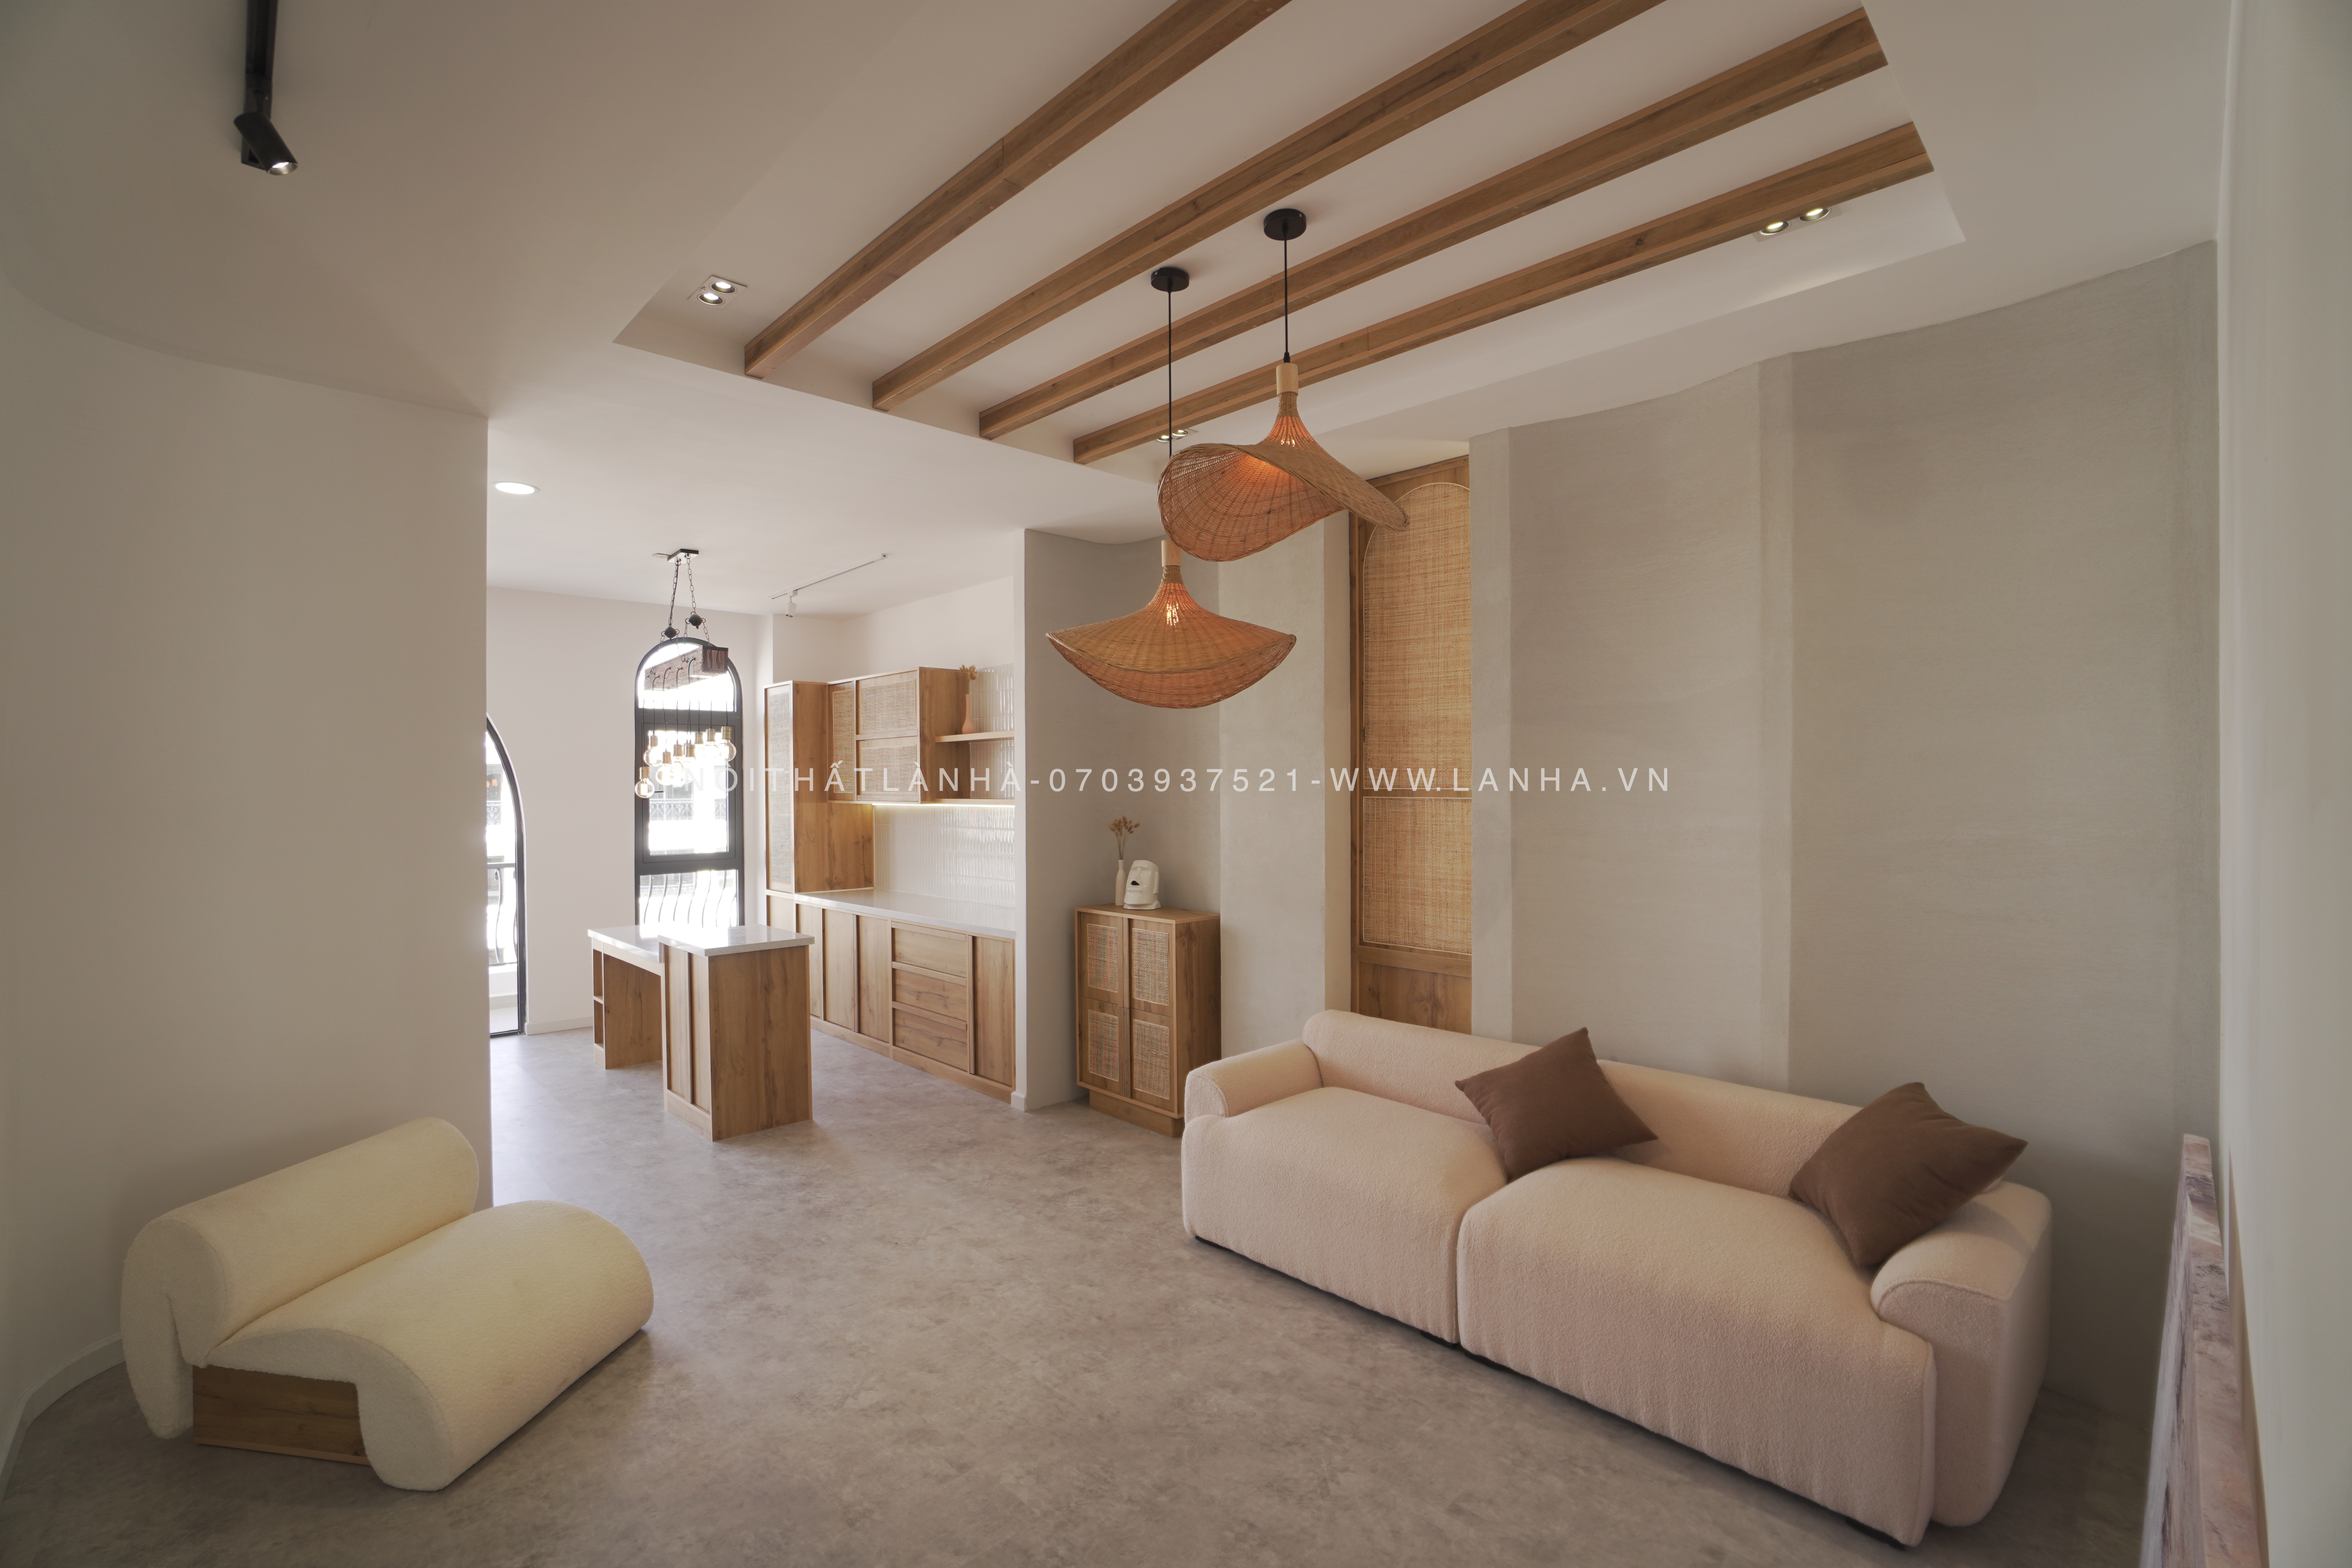 Thiết kế phòng ngủ chung cư phong cách Wabi Sabi nhẹ nhàng, thư thái